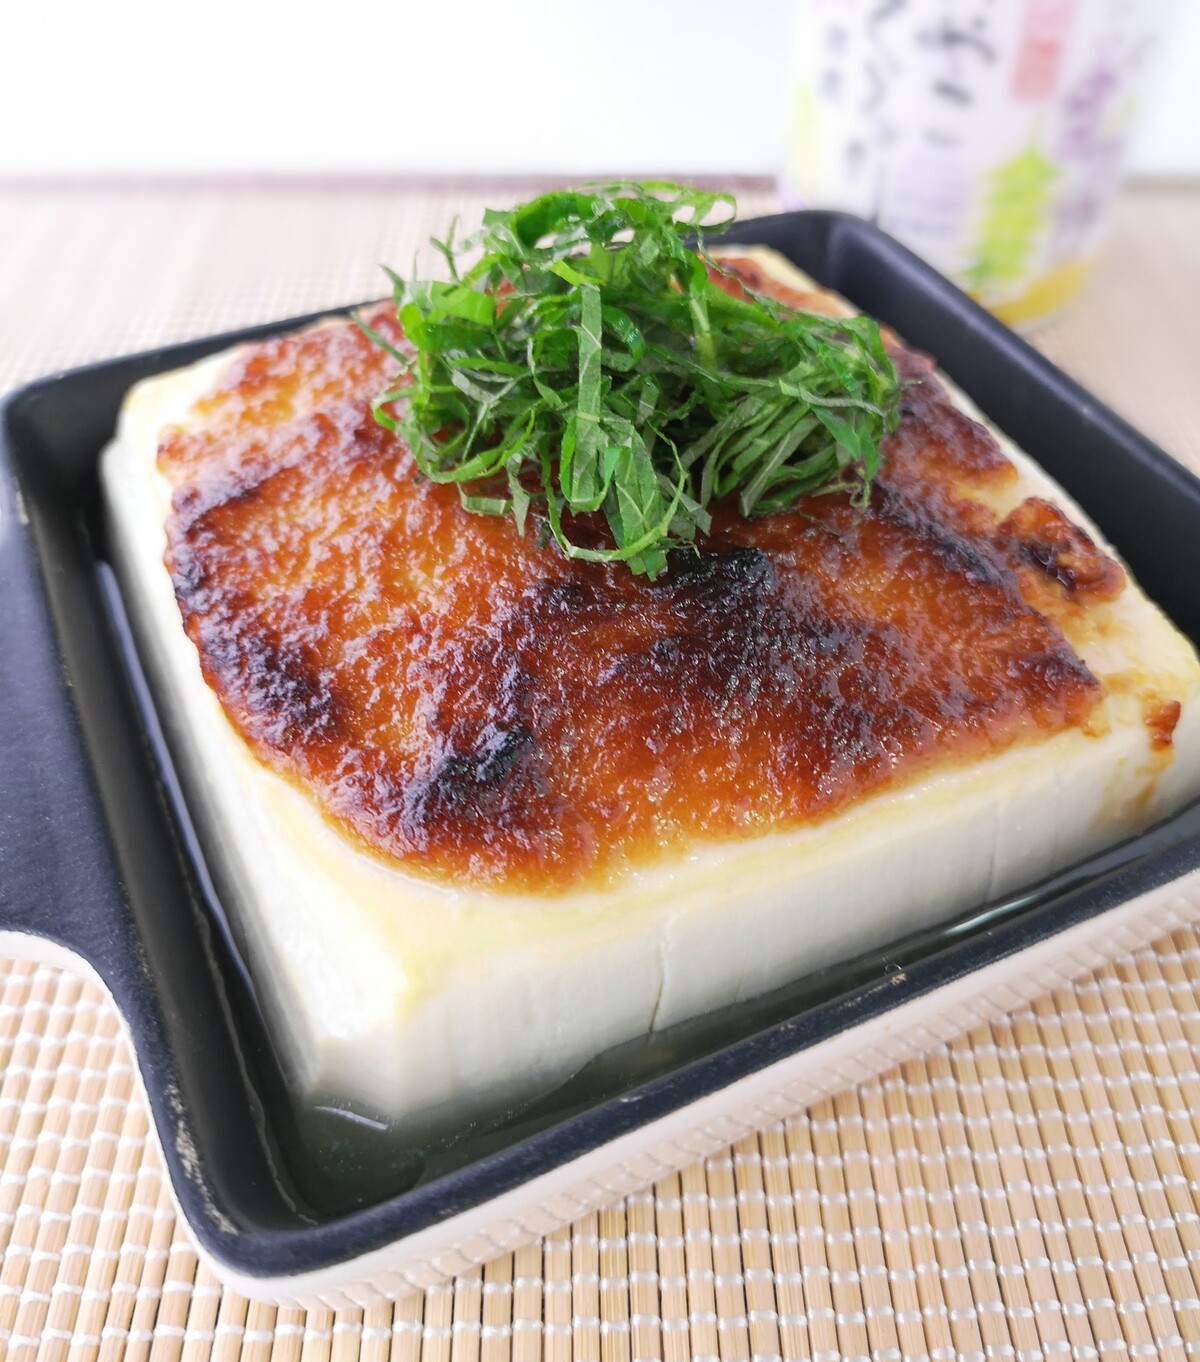 強烈な味わい 豆腐のにんにく味噌焼き 気まま料理で レシピとか Powered By ライブドアブログ